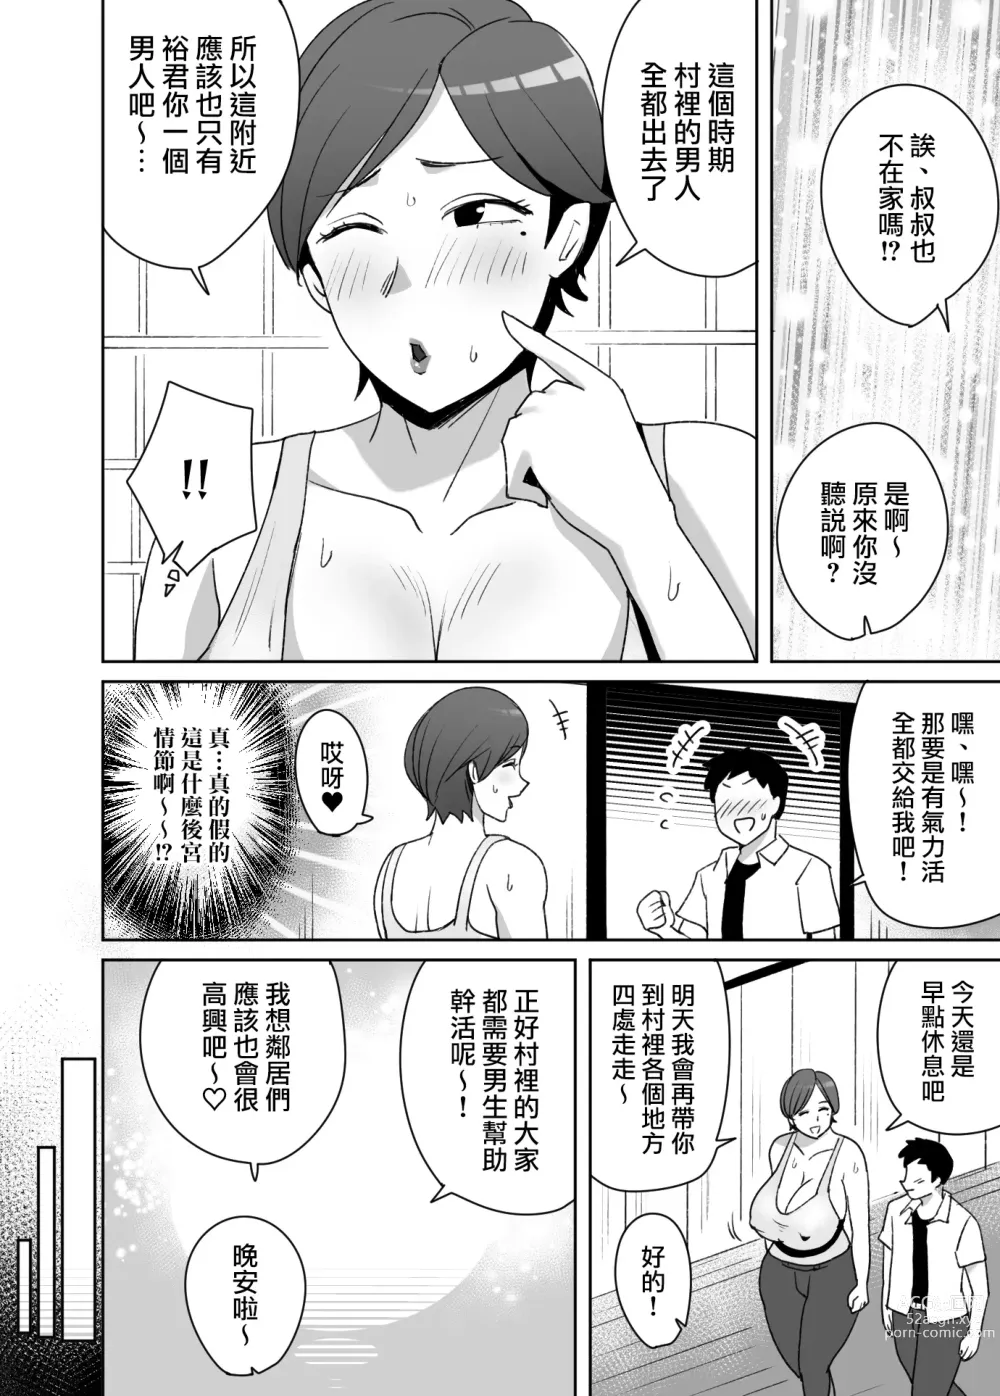 Page 7 of doujinshi 不覺得自己的爆乳身材很色情的鄉下阿姨和對著她發情的我